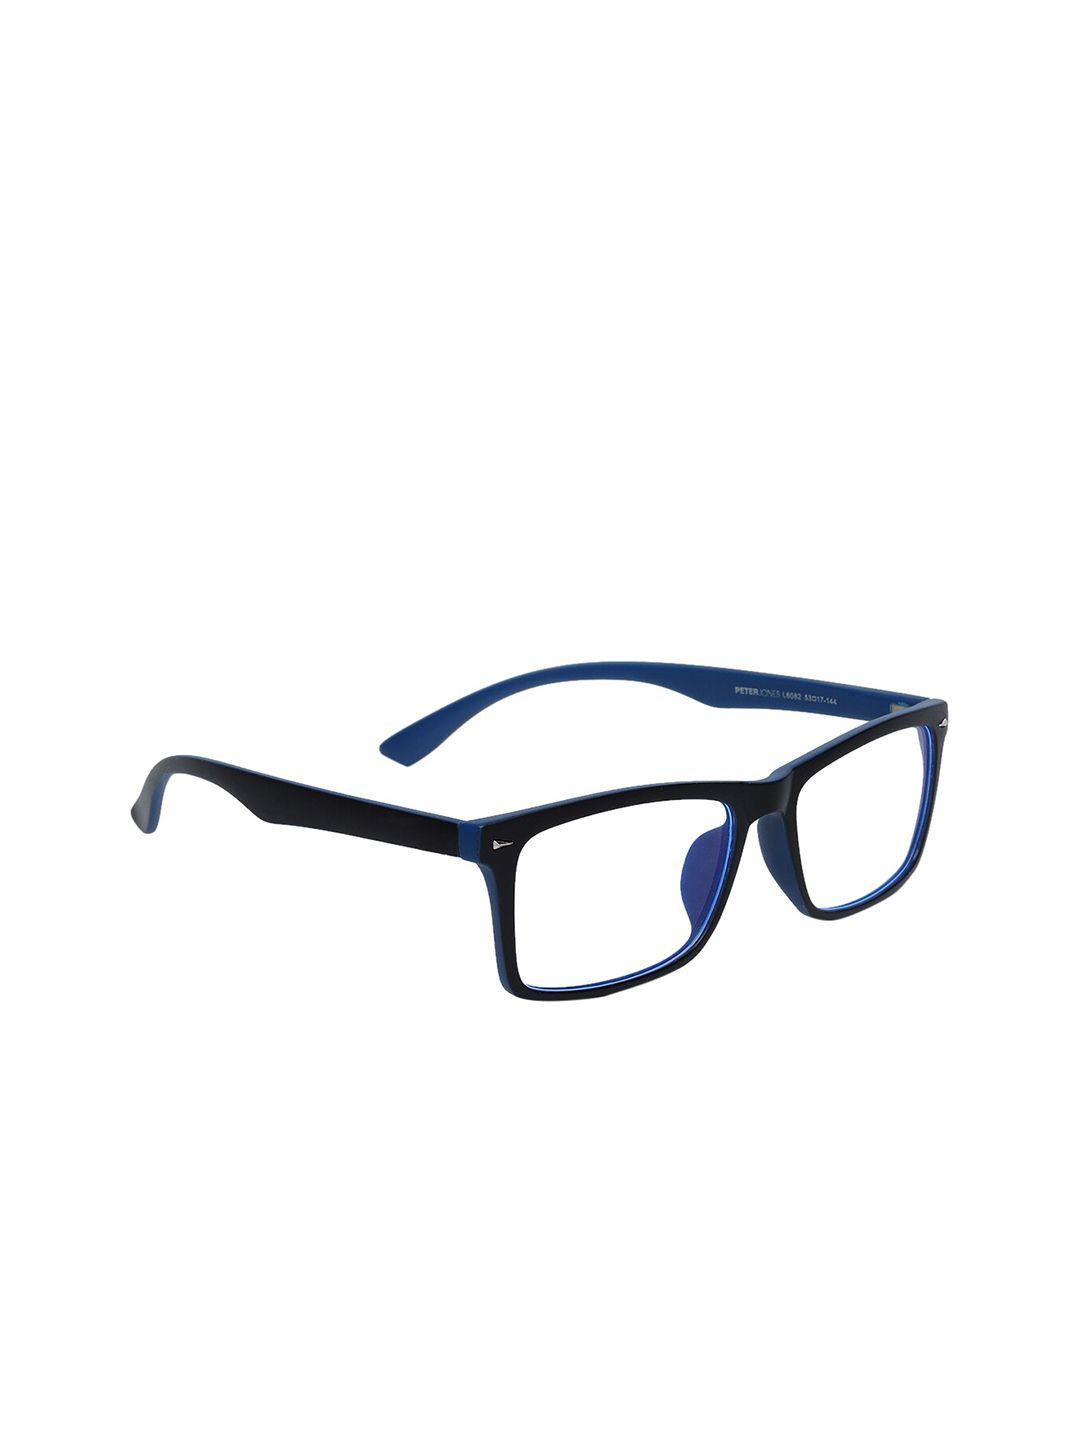 peter jones eyewear unisex black & blue full rim rectangle blue light blocking glasses